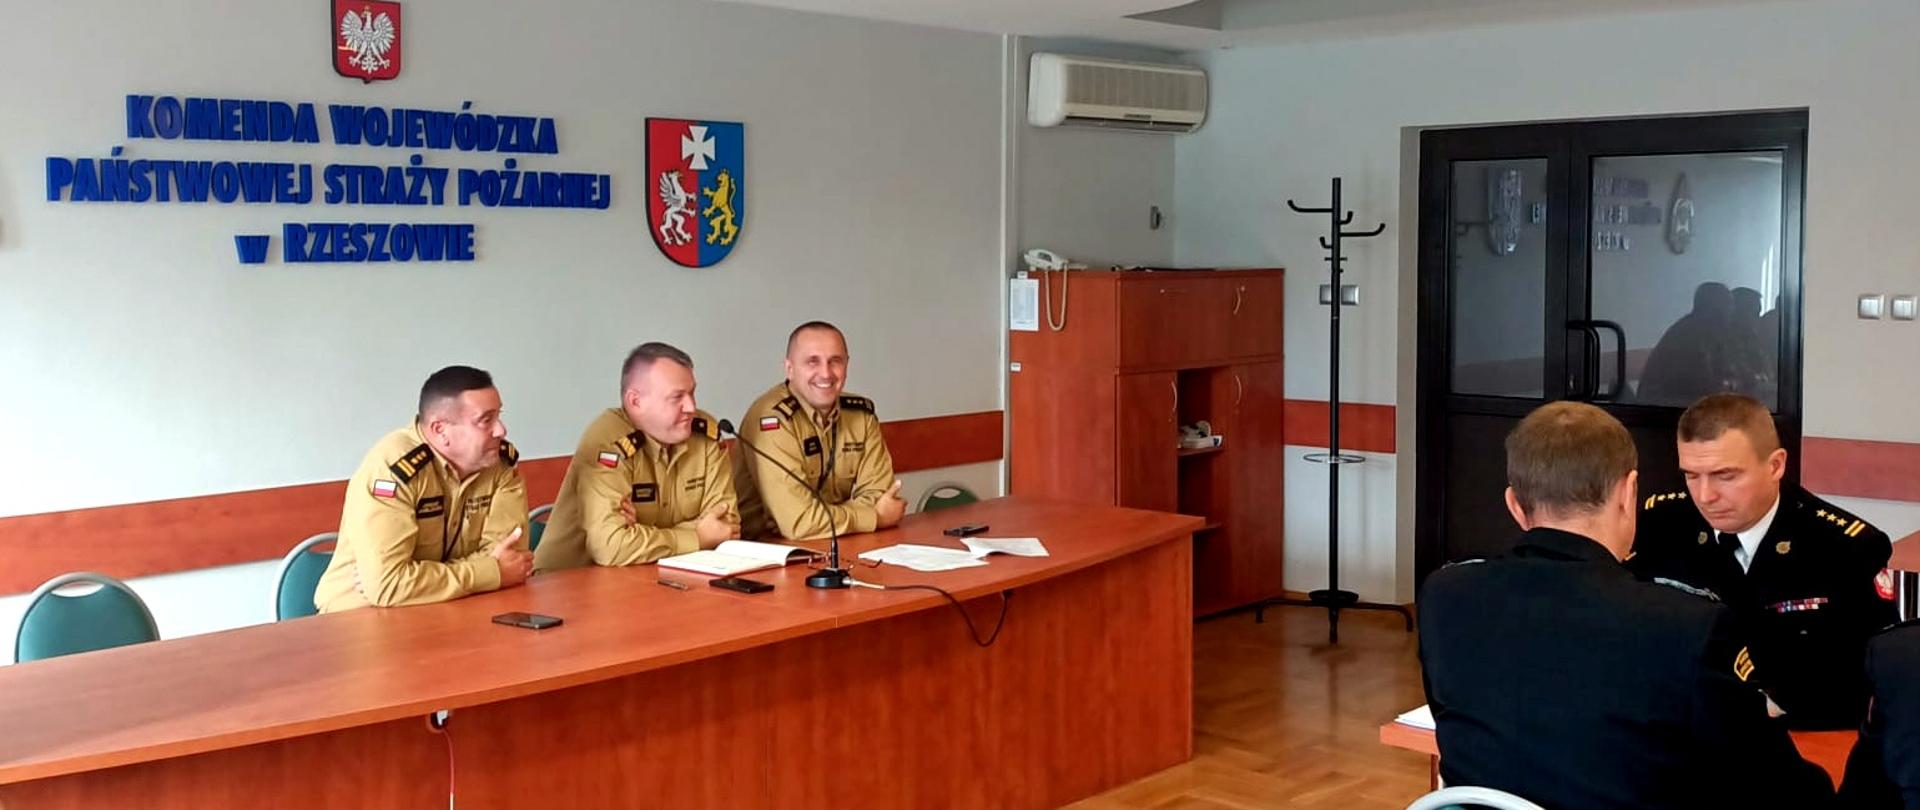 Zdjęcie zrobione w sali szkoleniowej. Przy stołach siedzą oficerowie Państwowej Straży Pożarnej uczestniczący w naradzie. Strażacy ubrani są mundury służbowe i wyjściowe.